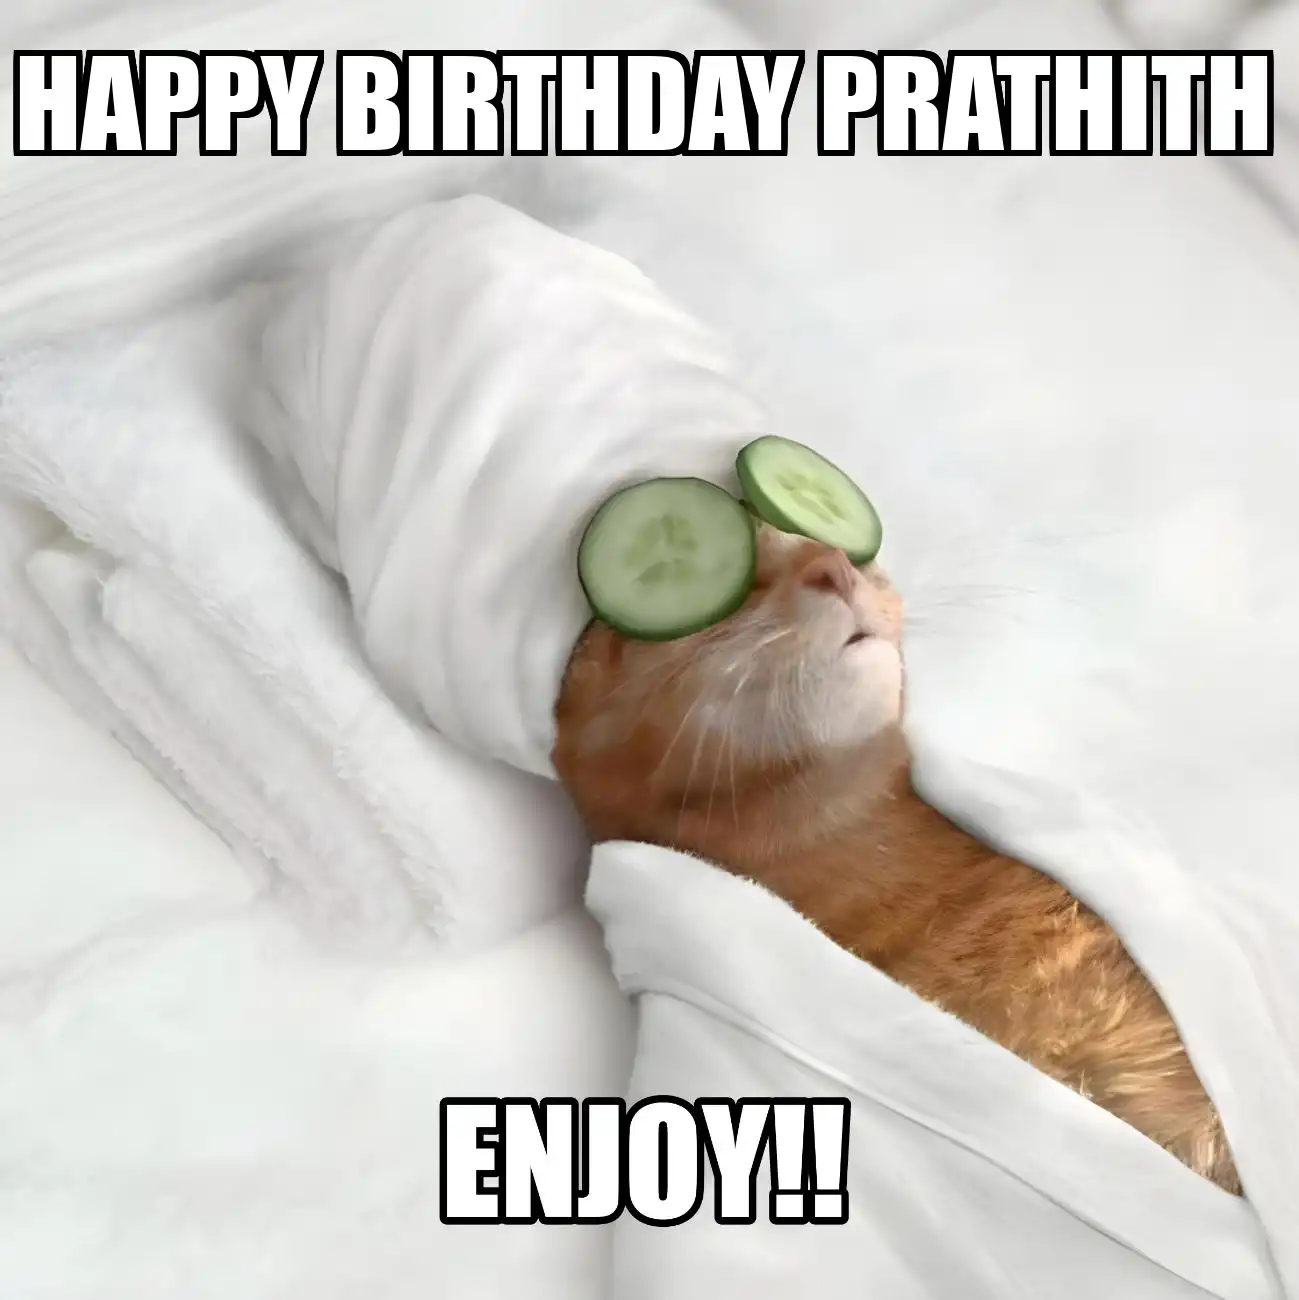 Happy Birthday Prathith Enjoy Cat Meme